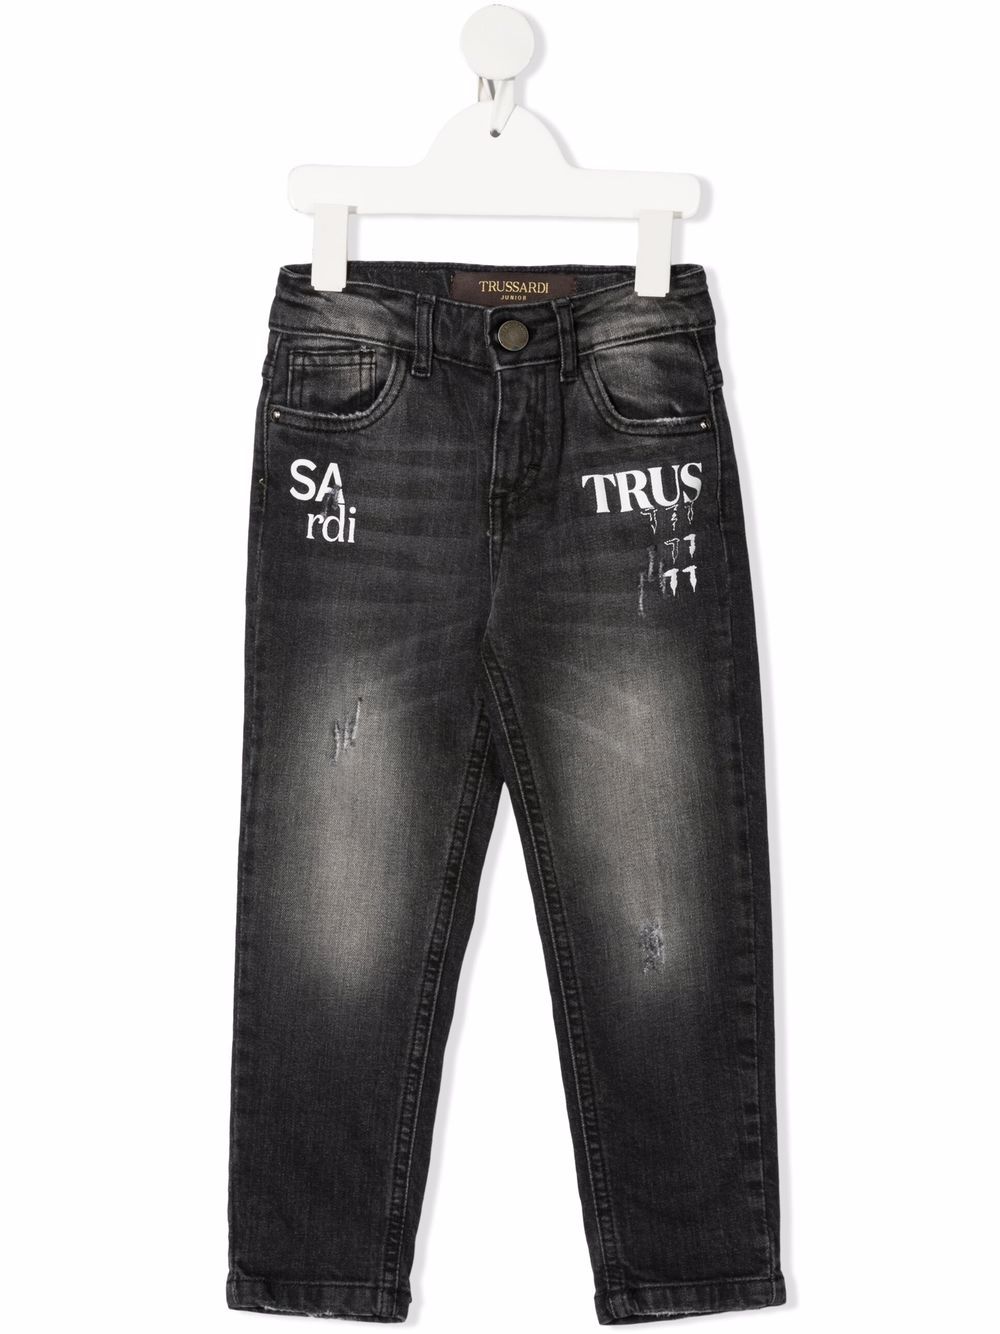 фото Trussardi junior джинсы скинни с логотипом